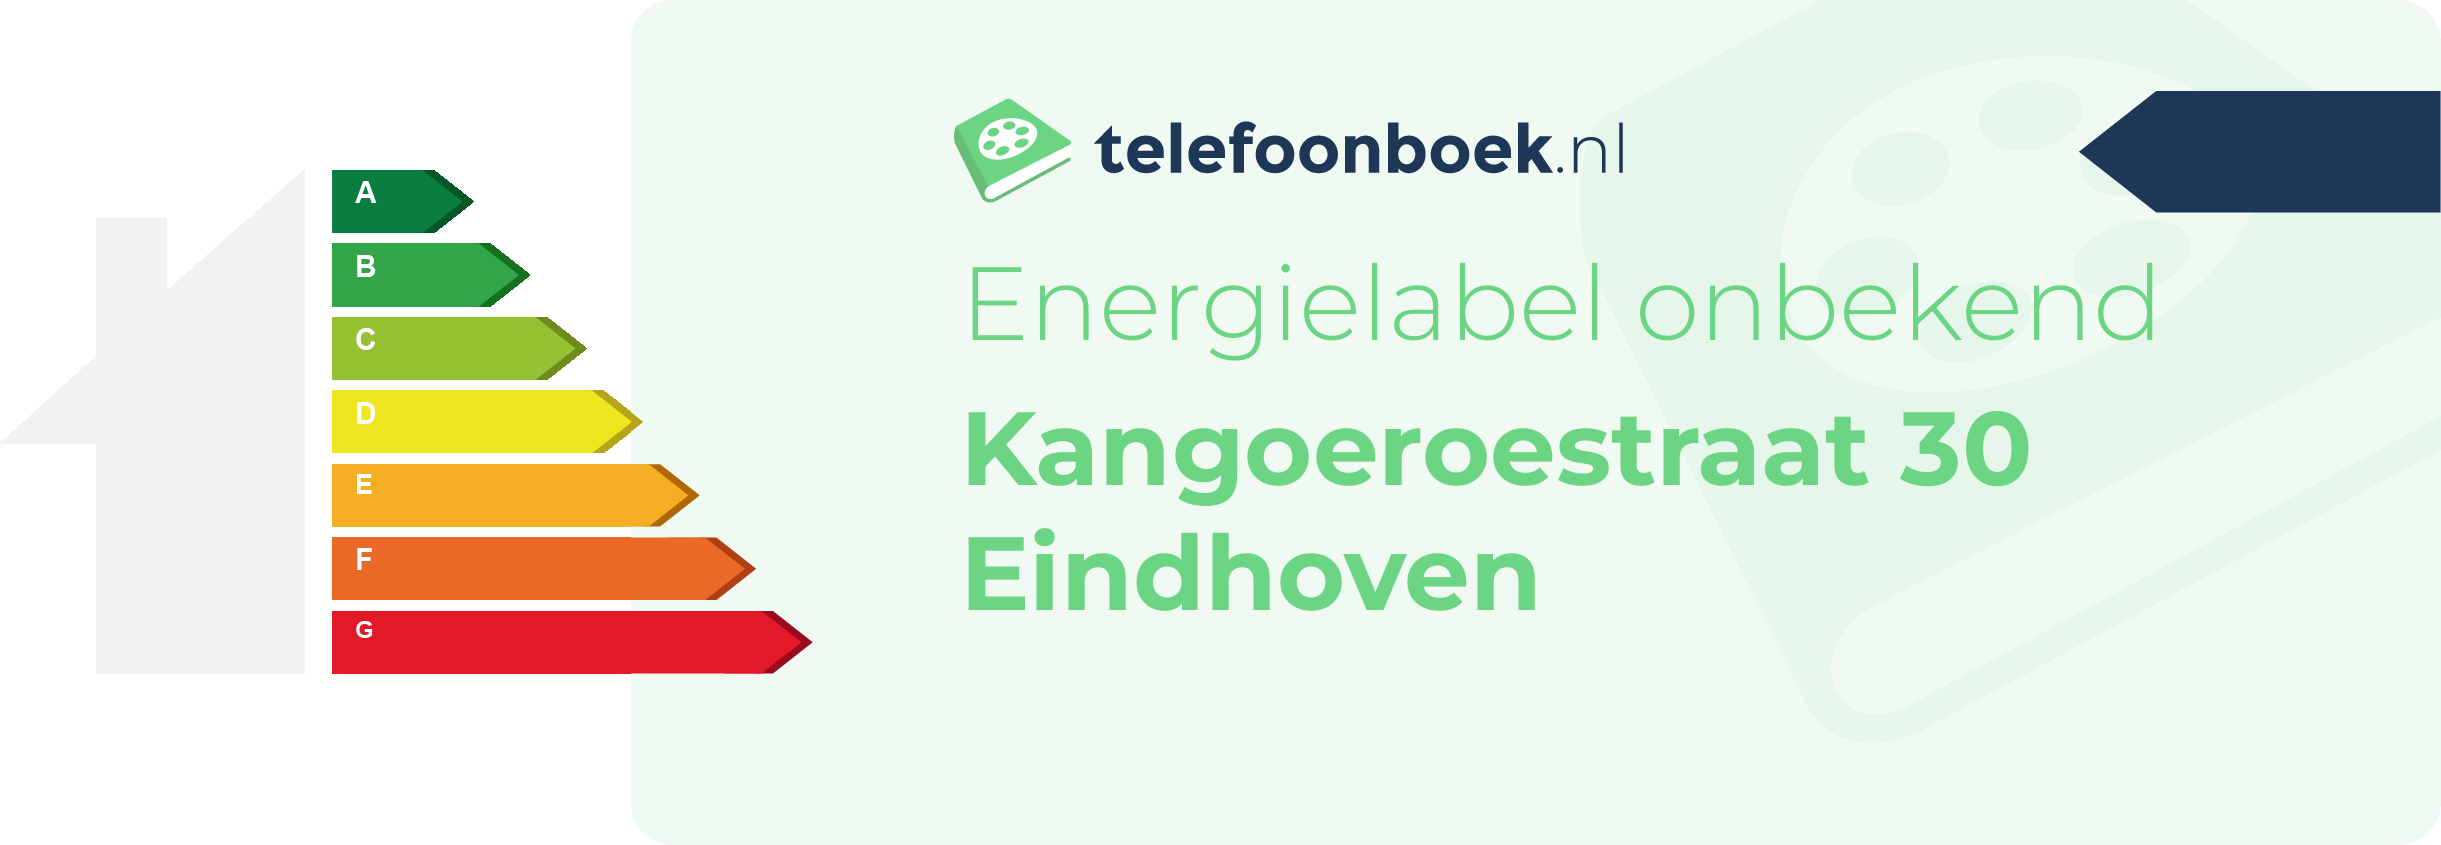 Energielabel Kangoeroestraat 30 Eindhoven